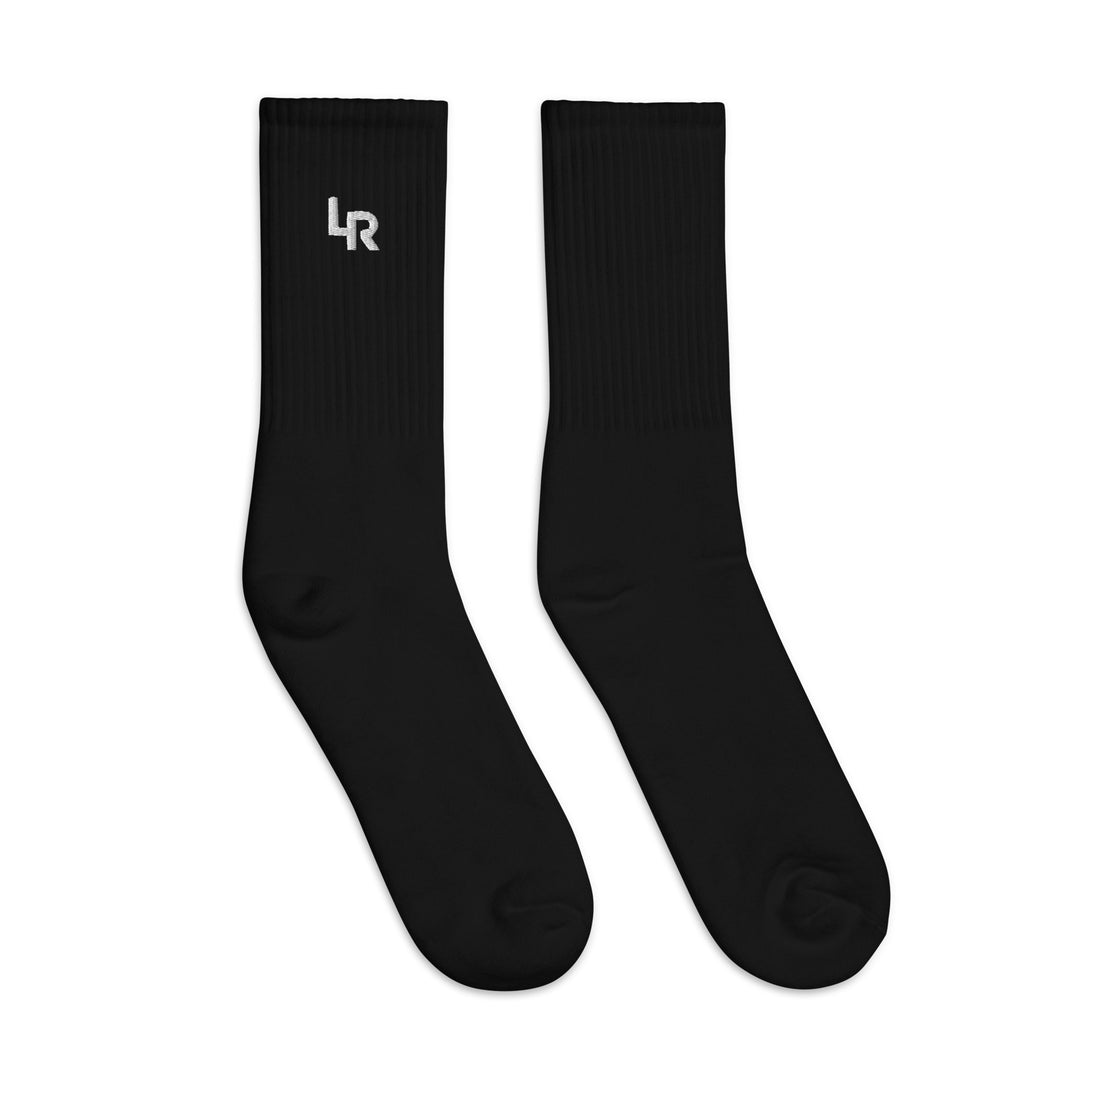 Black Performance Socks